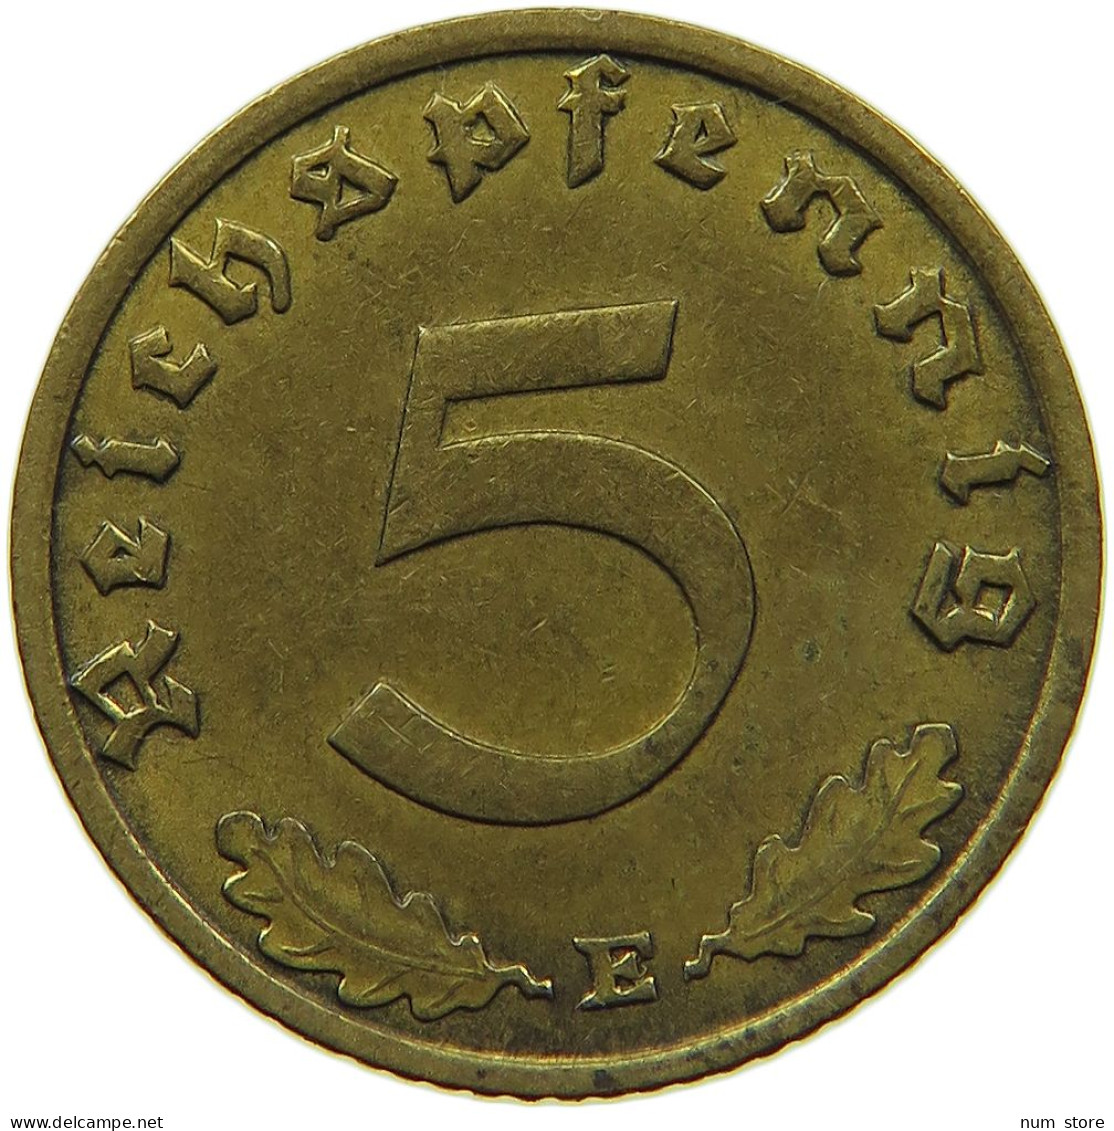 GERMANY 5 REICHSPFENNIG 1937 E #s091 0803 - 5 Reichspfennig